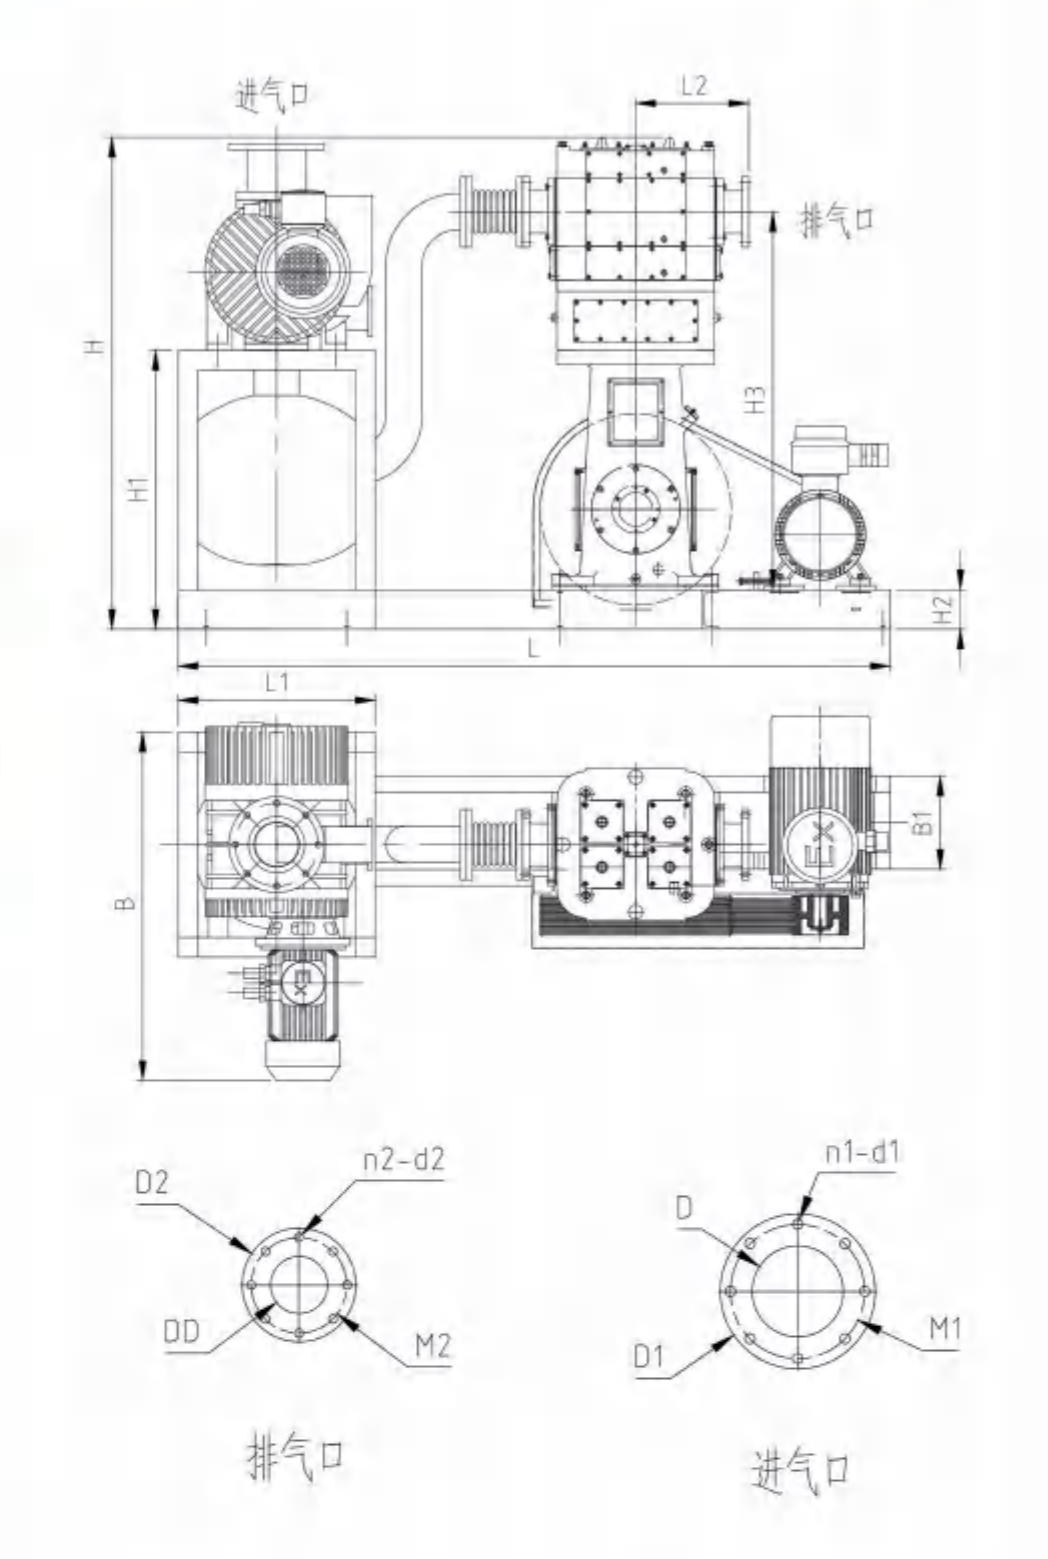 JZJW系列羅茨往復真空泵機組外形及安裝尺寸圖